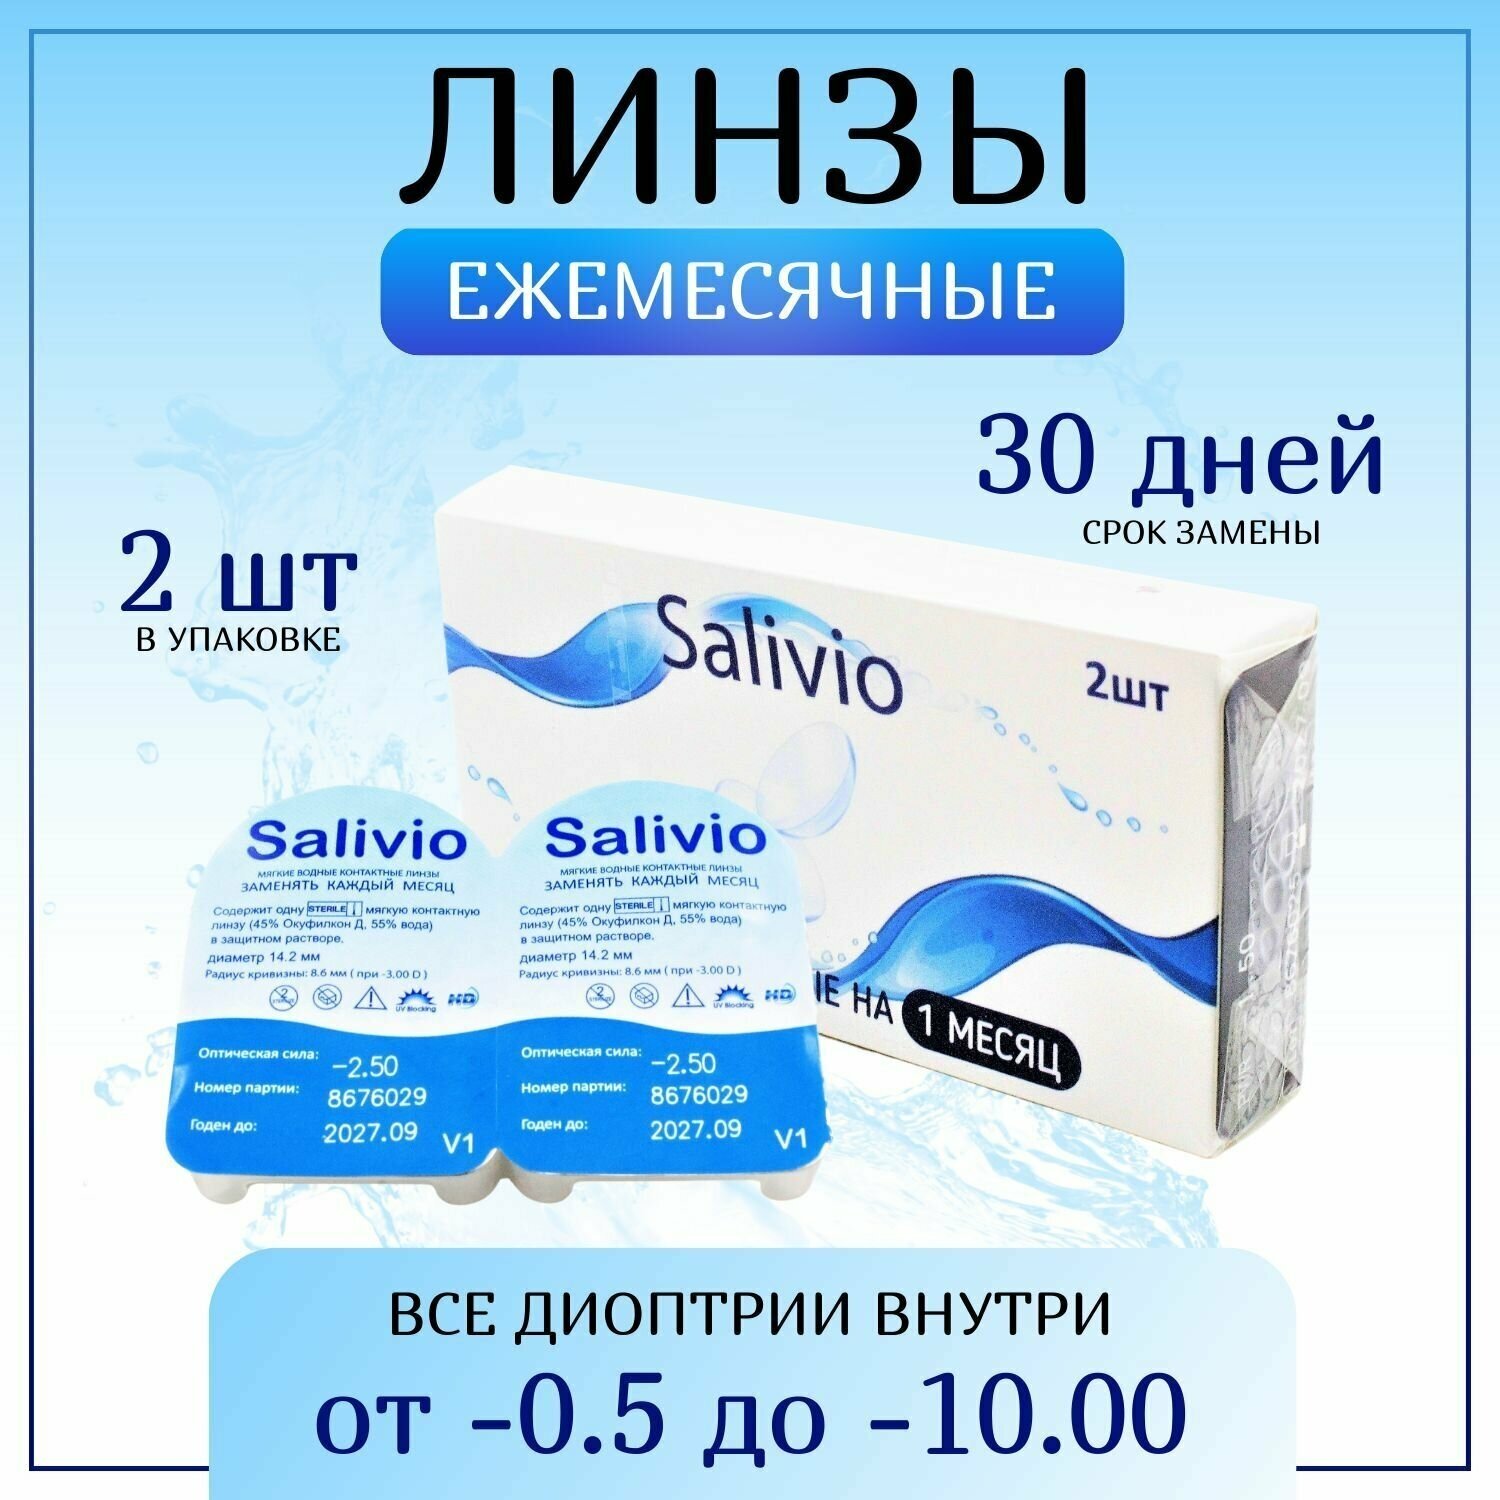 Контактные линзы, SALIVIO, -3,75 ежемесячные (30 дней), 2 штуки, прозрачные